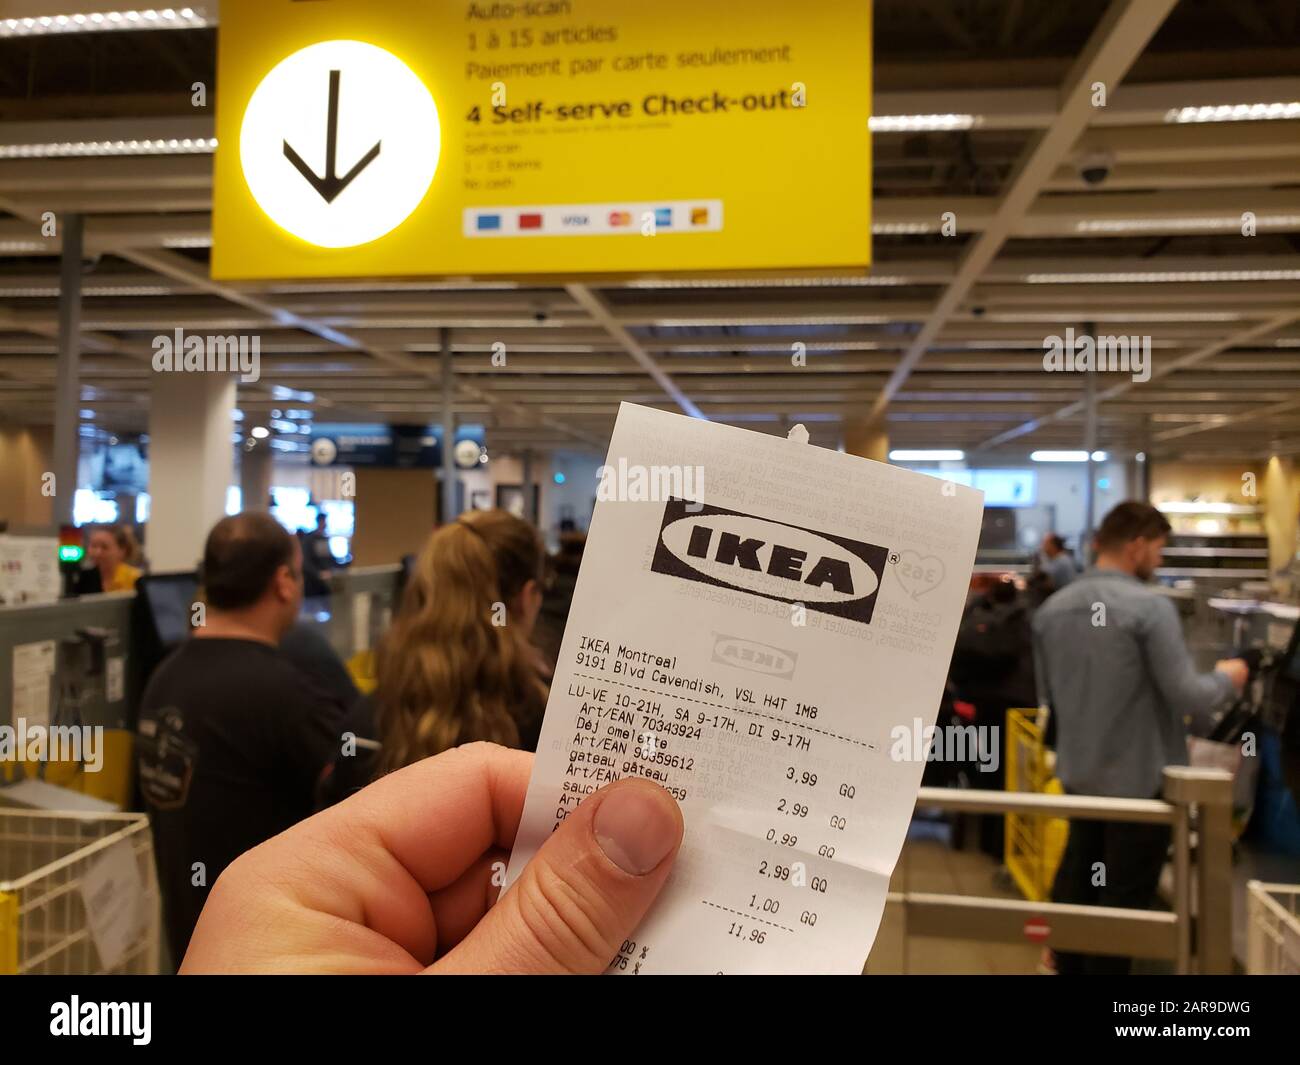 Virgil Abloh, IKEA, Receipt Rug (2019), Available for Sale